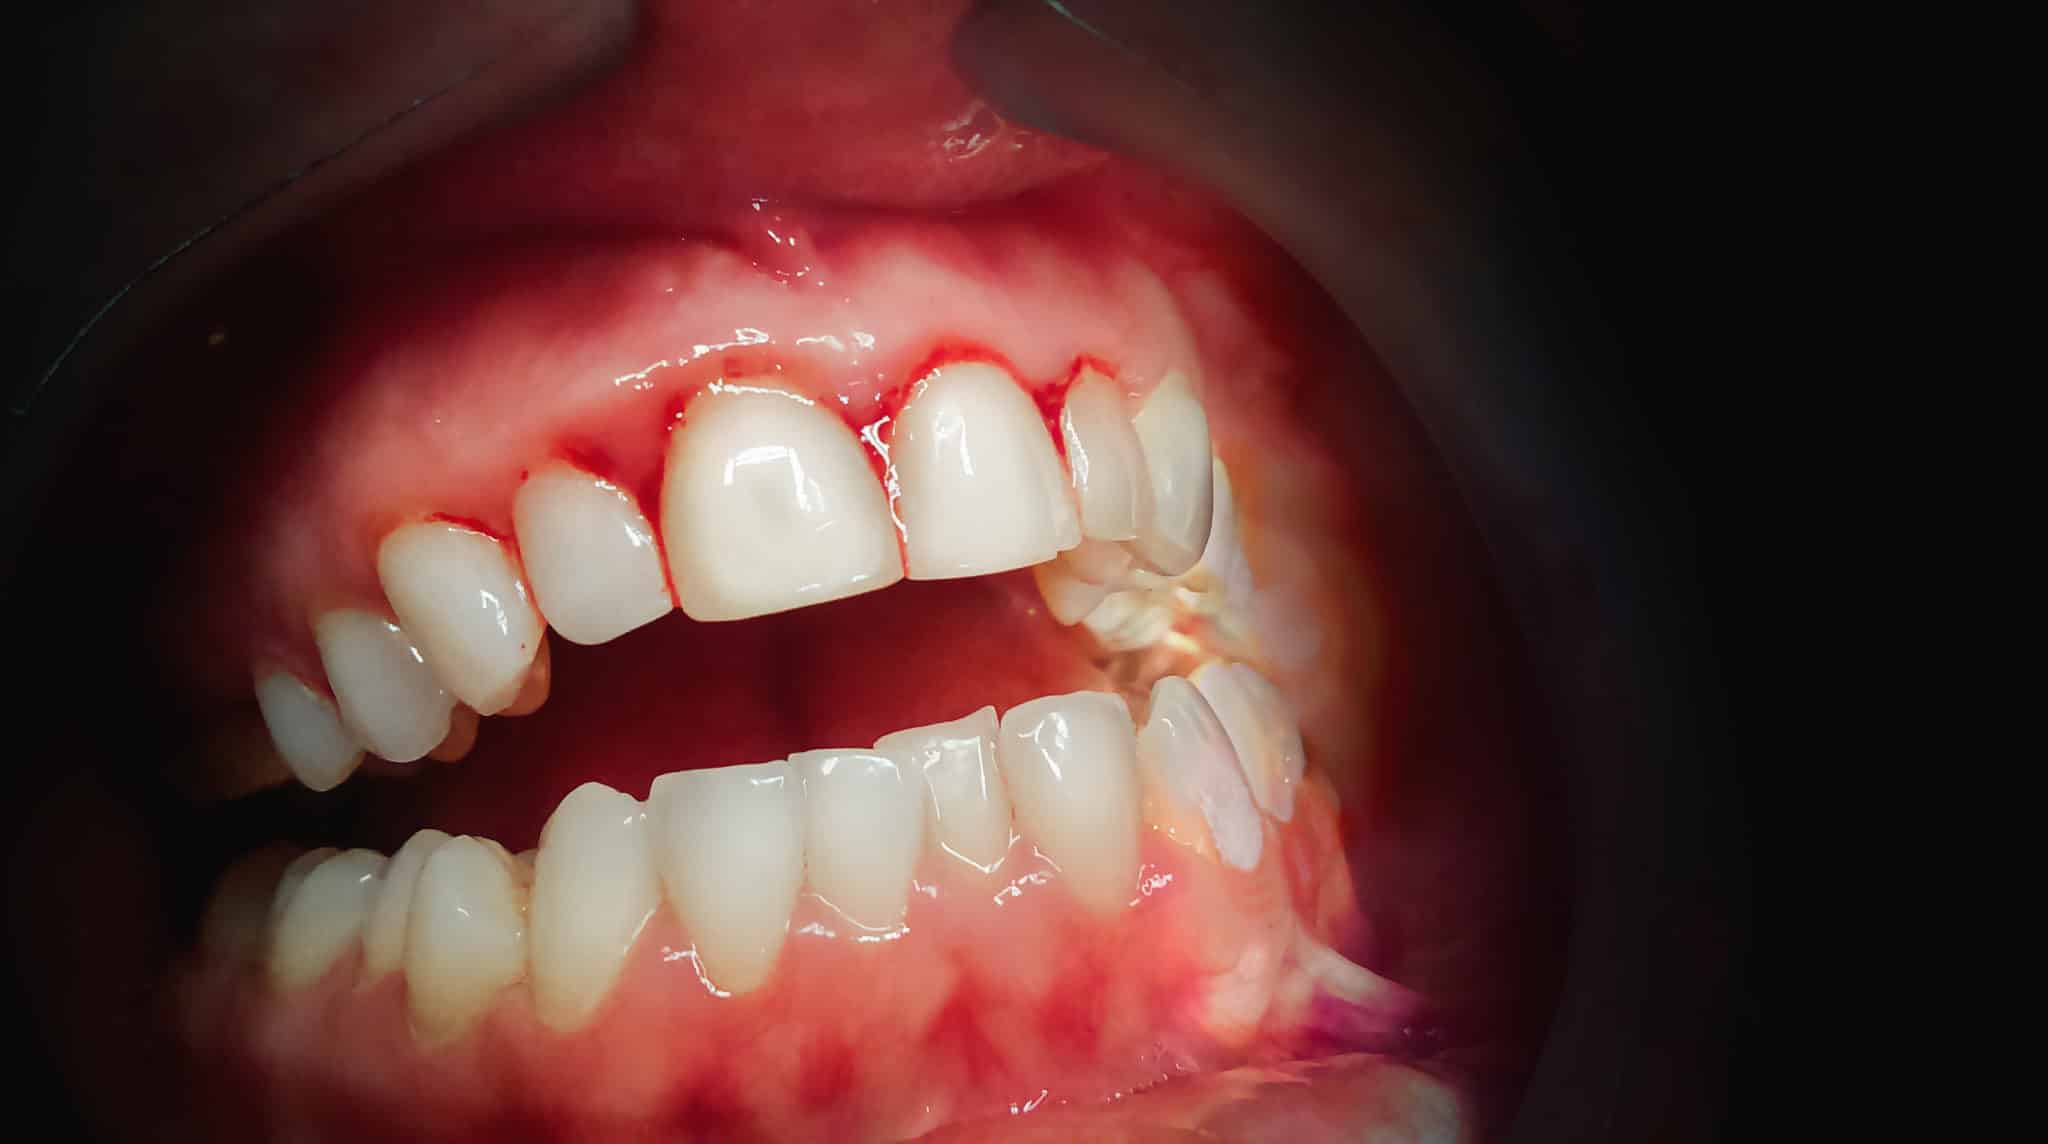 gums bleeding after dentist visit